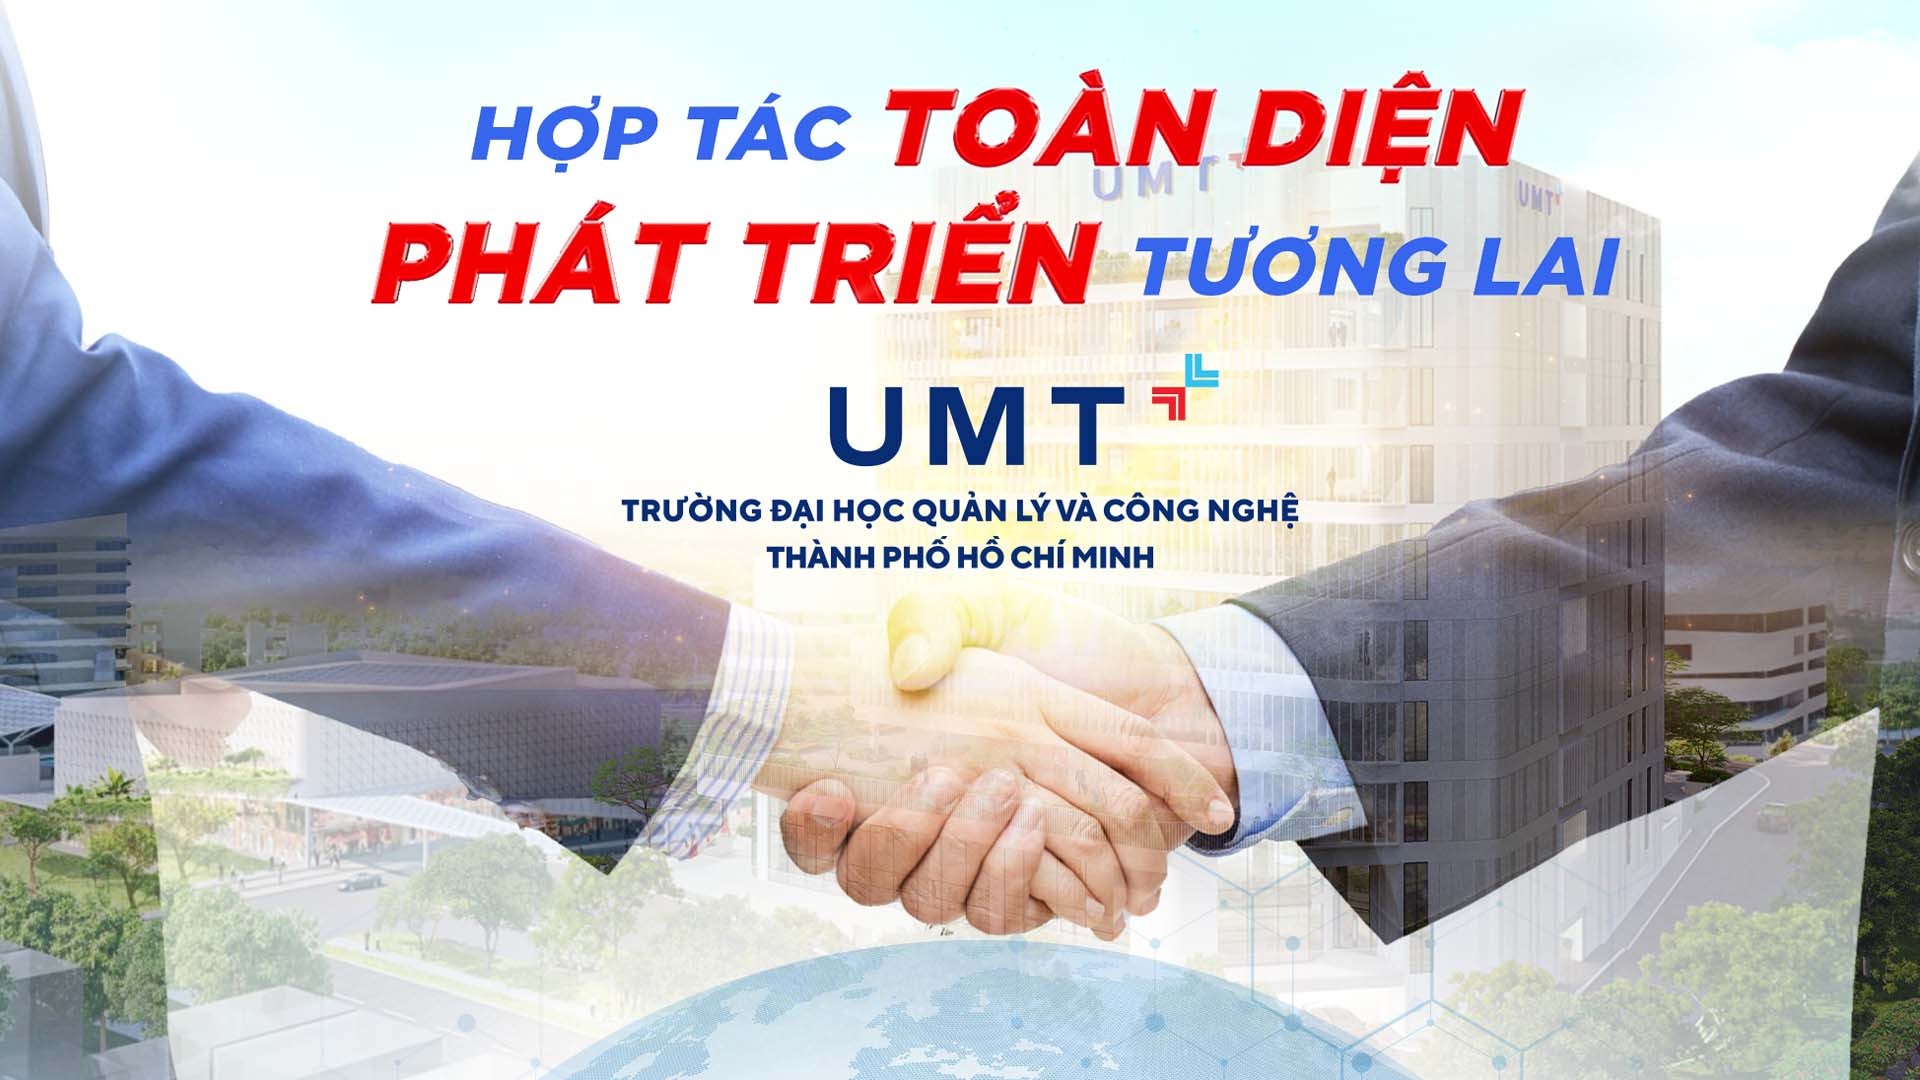 UMT đẩy mạnh hợp tác quốc tế, tạo ra nhiều giá trị cho sinh viên và nhà trường